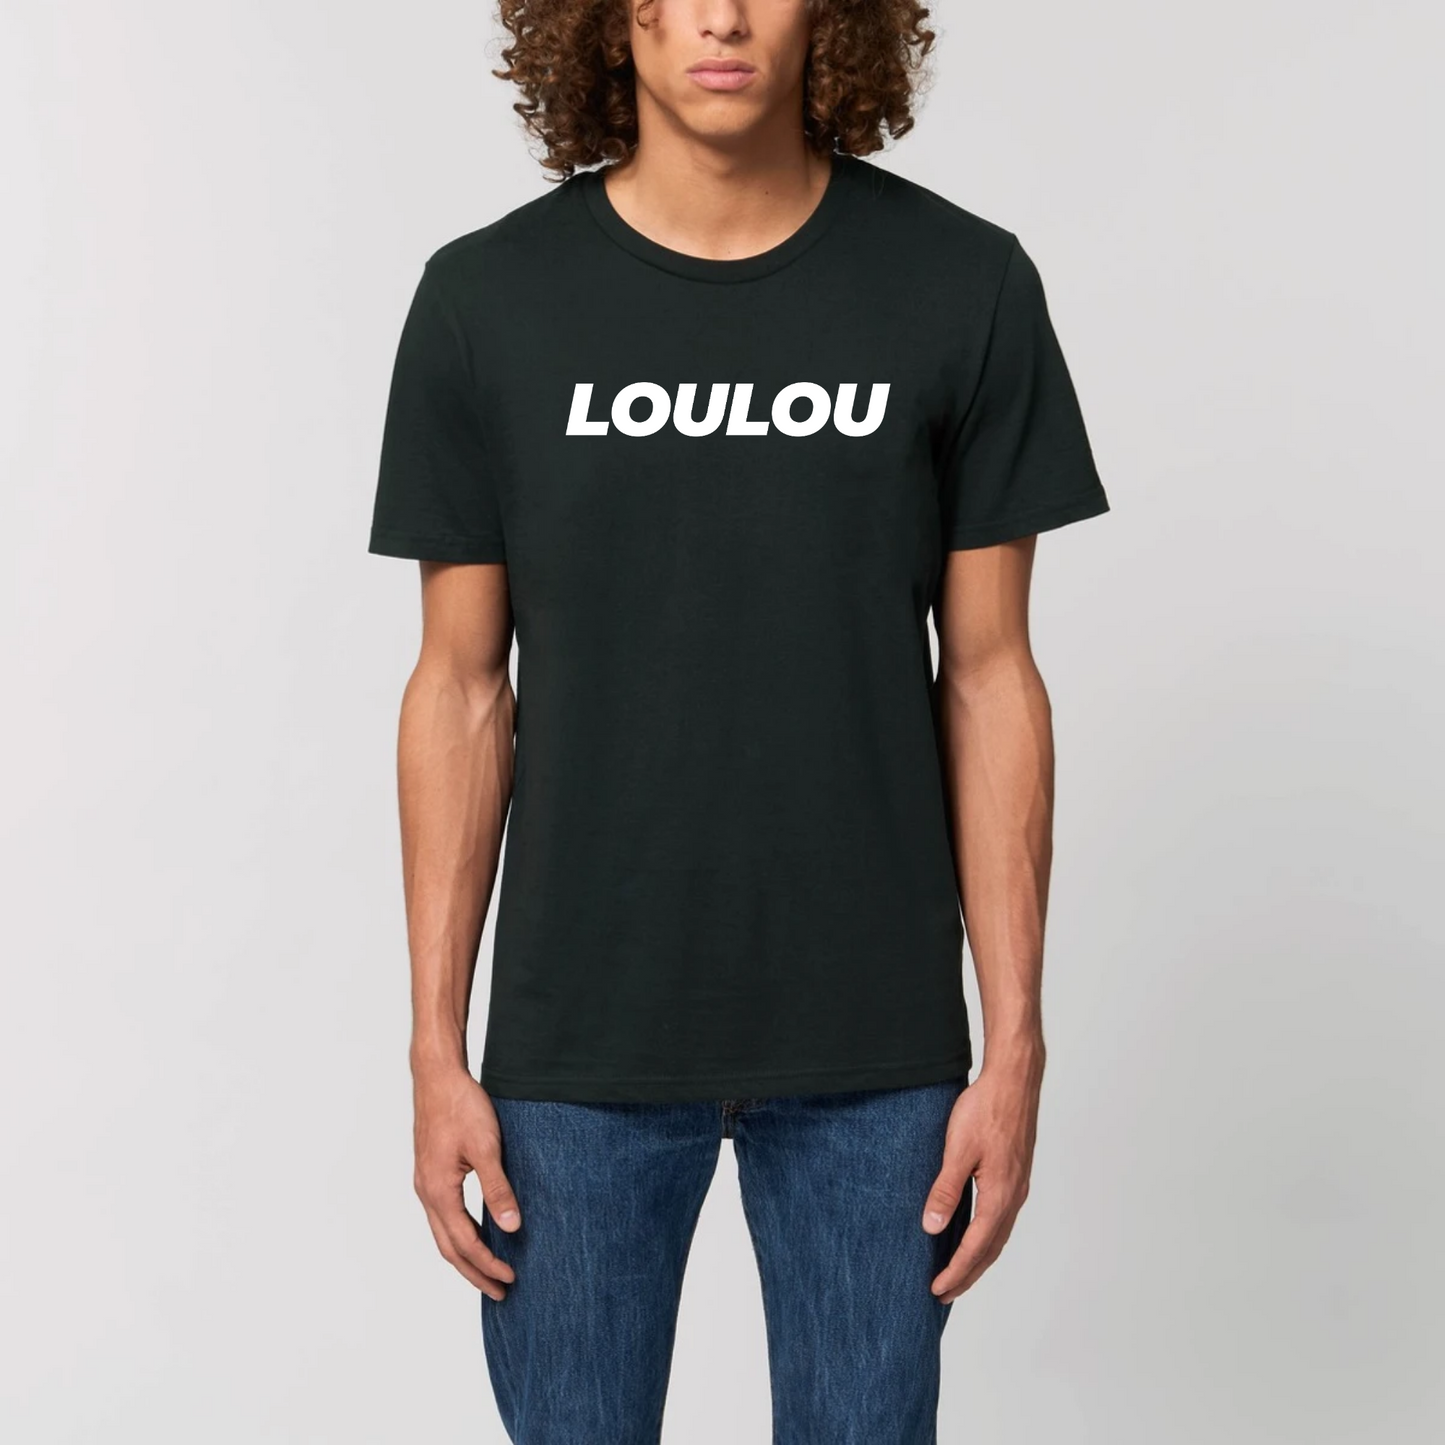 t-shirt loulou, T-French, t-shirt homme, coton bio, t-shirt saint valentin, t-shirt surnom, t-shirt humour, Noir